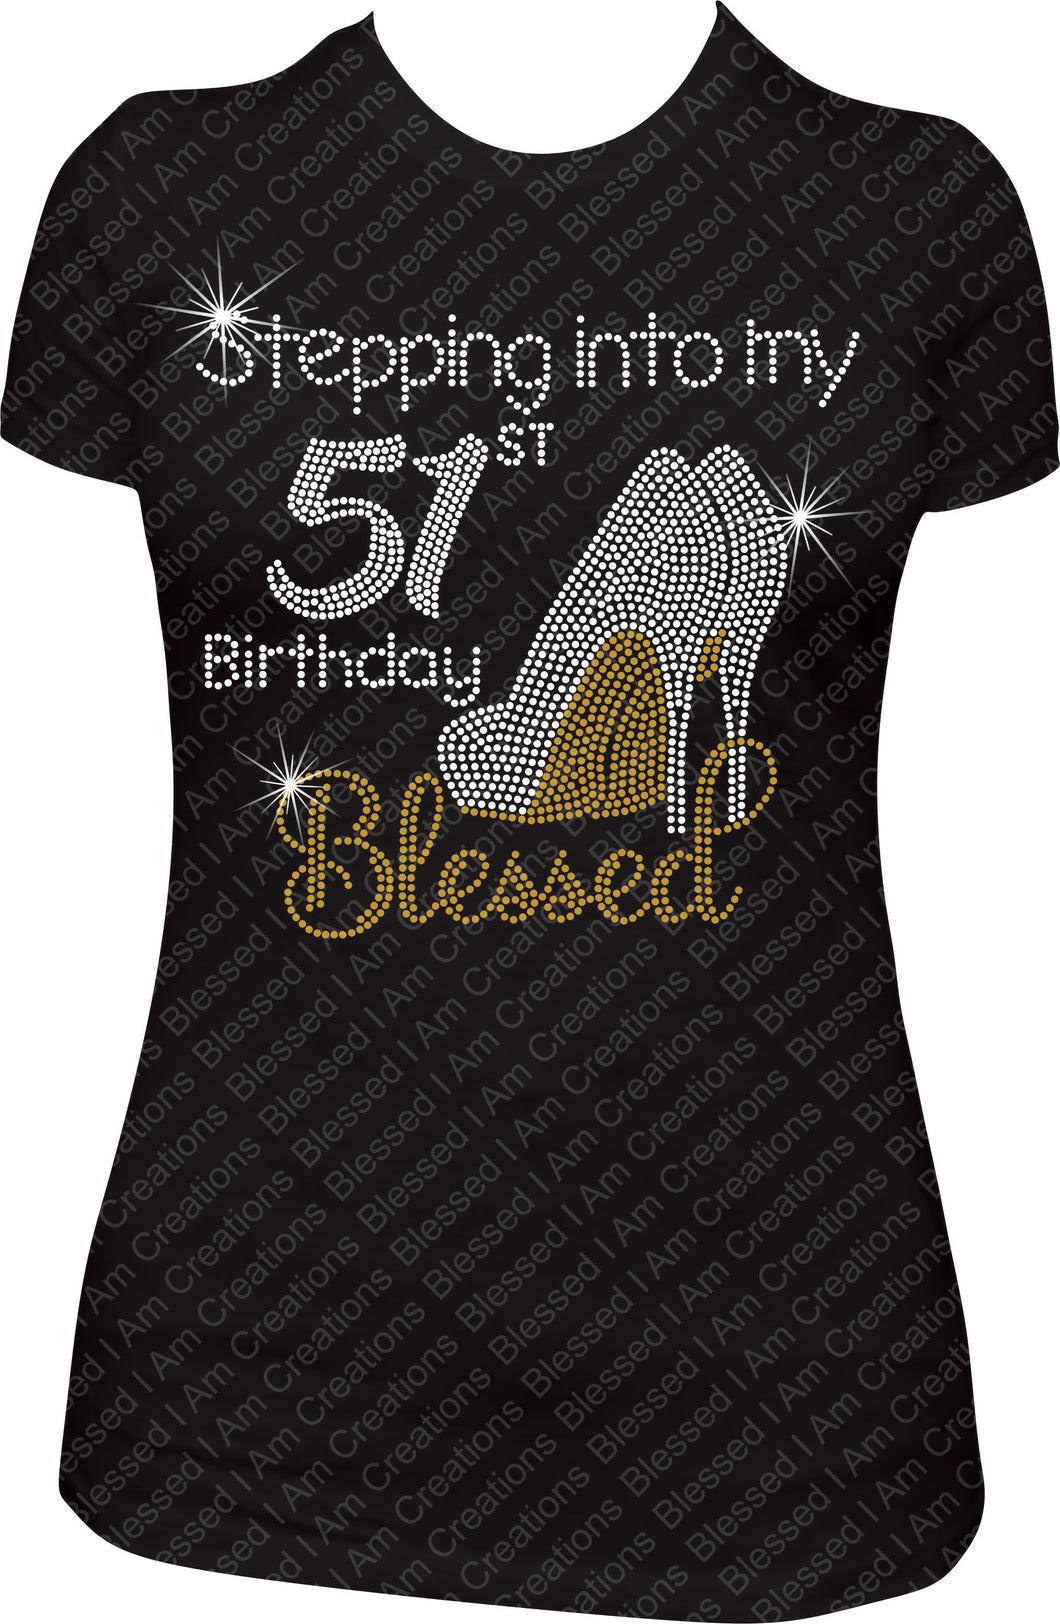 Stepping into my 51st Birthday Blessed Rhinestone Birthday Shirt